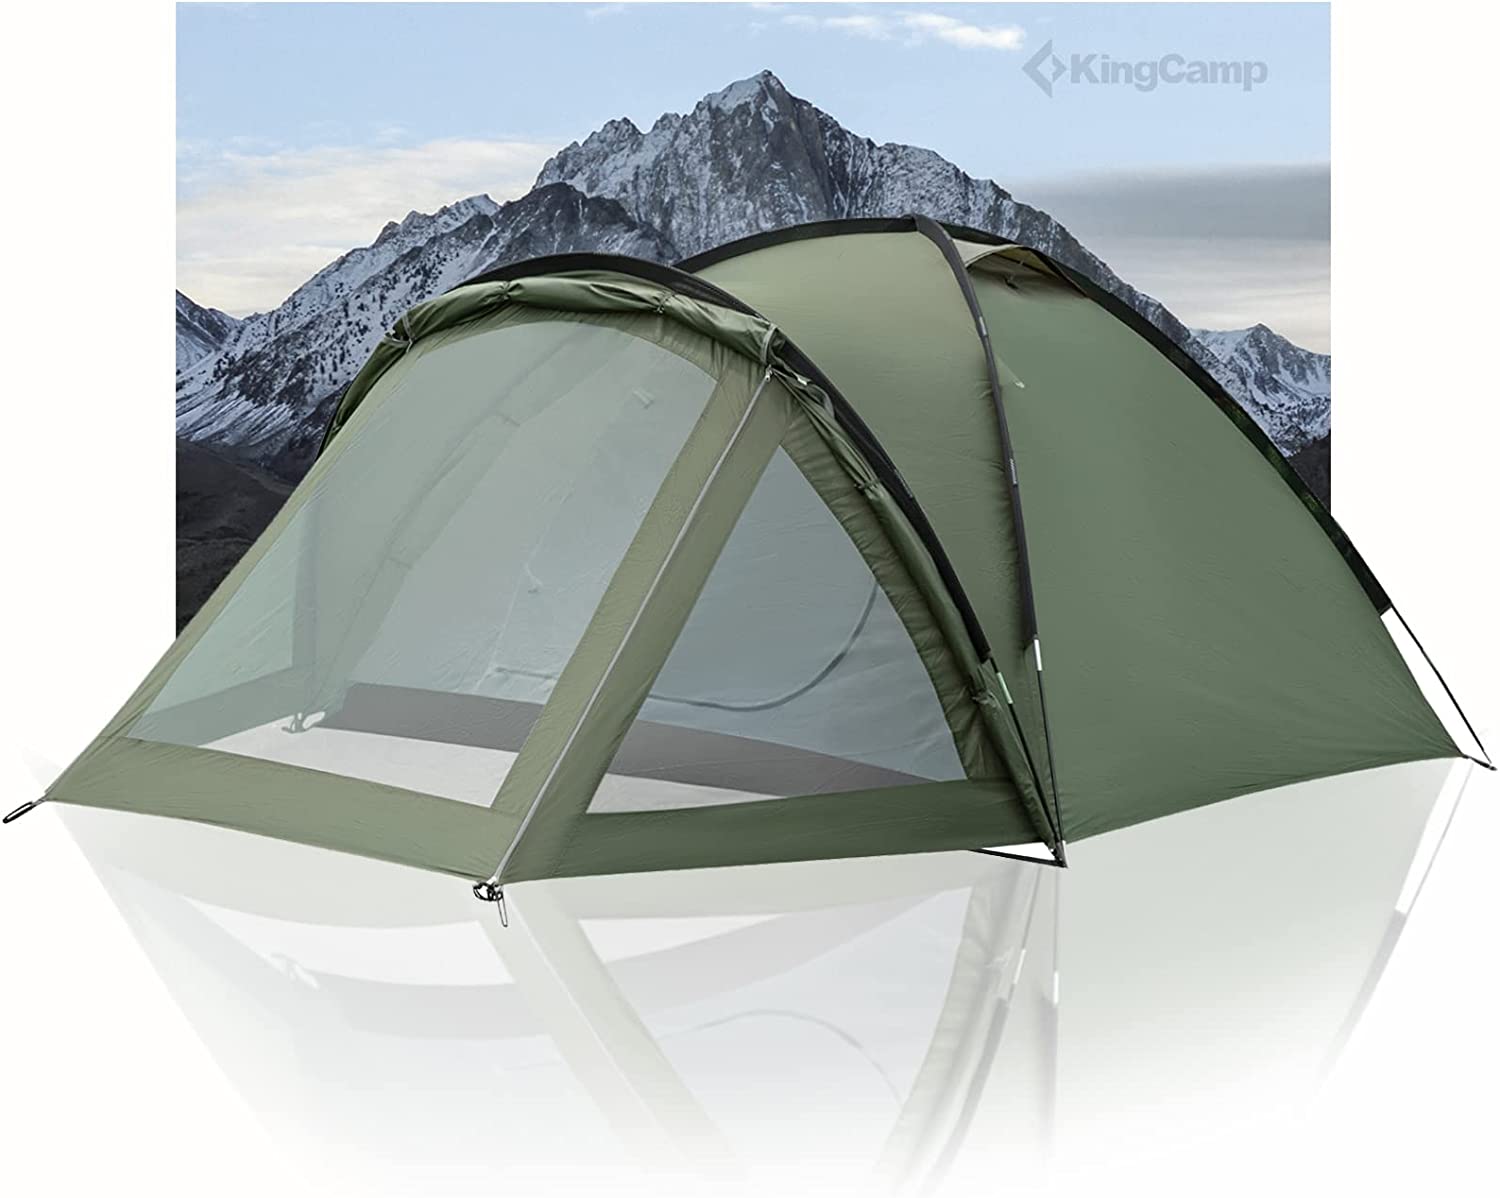 Bild zu KingCamp 3-Personen Camping Zelt mit Vorbau für 65,97€